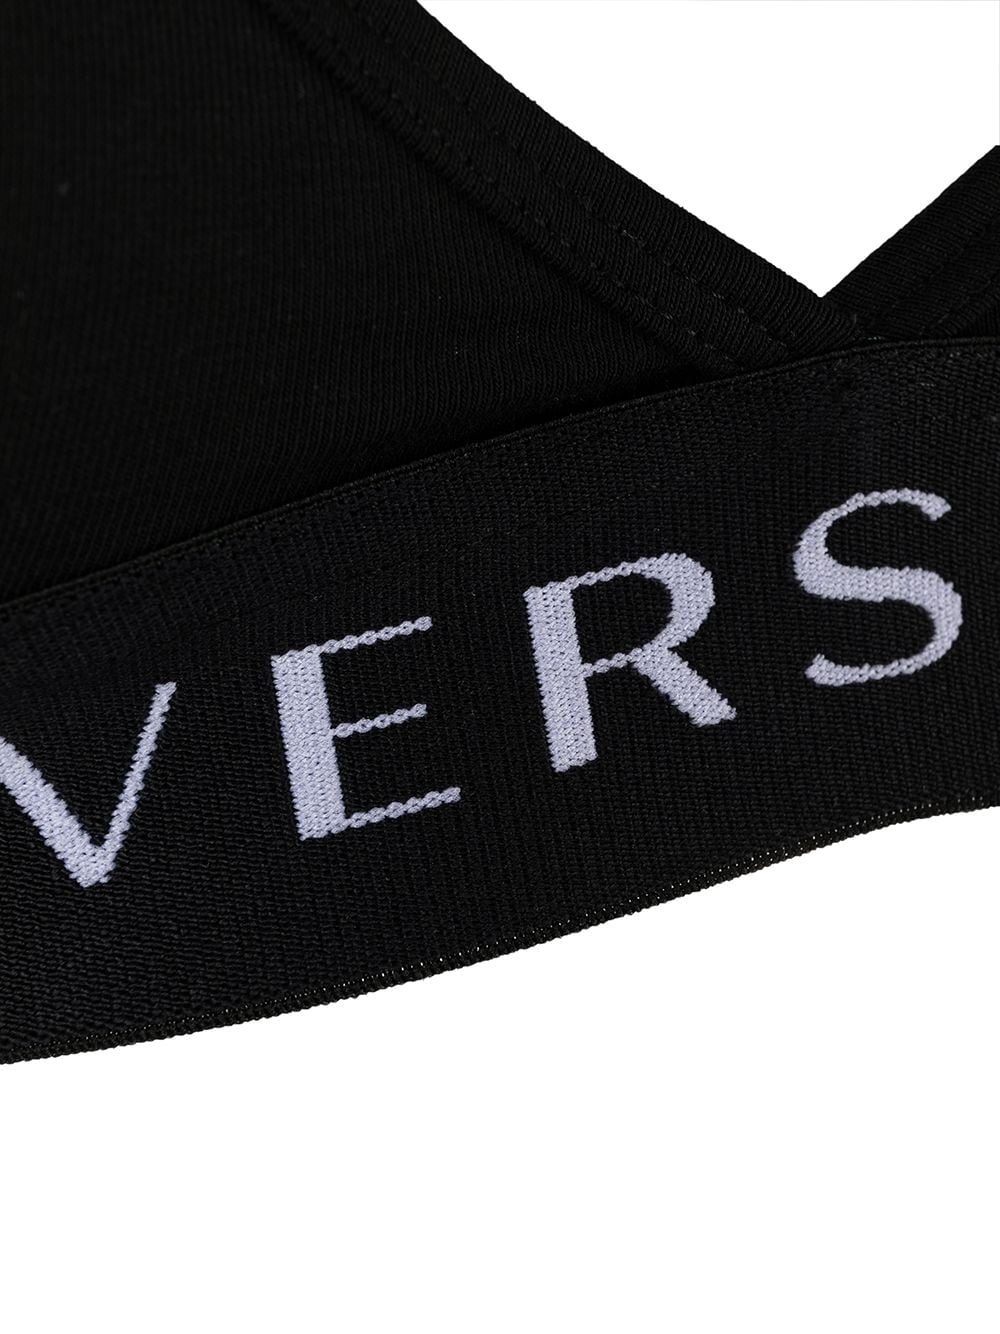 фото Versace бюстгальтер с логотипом